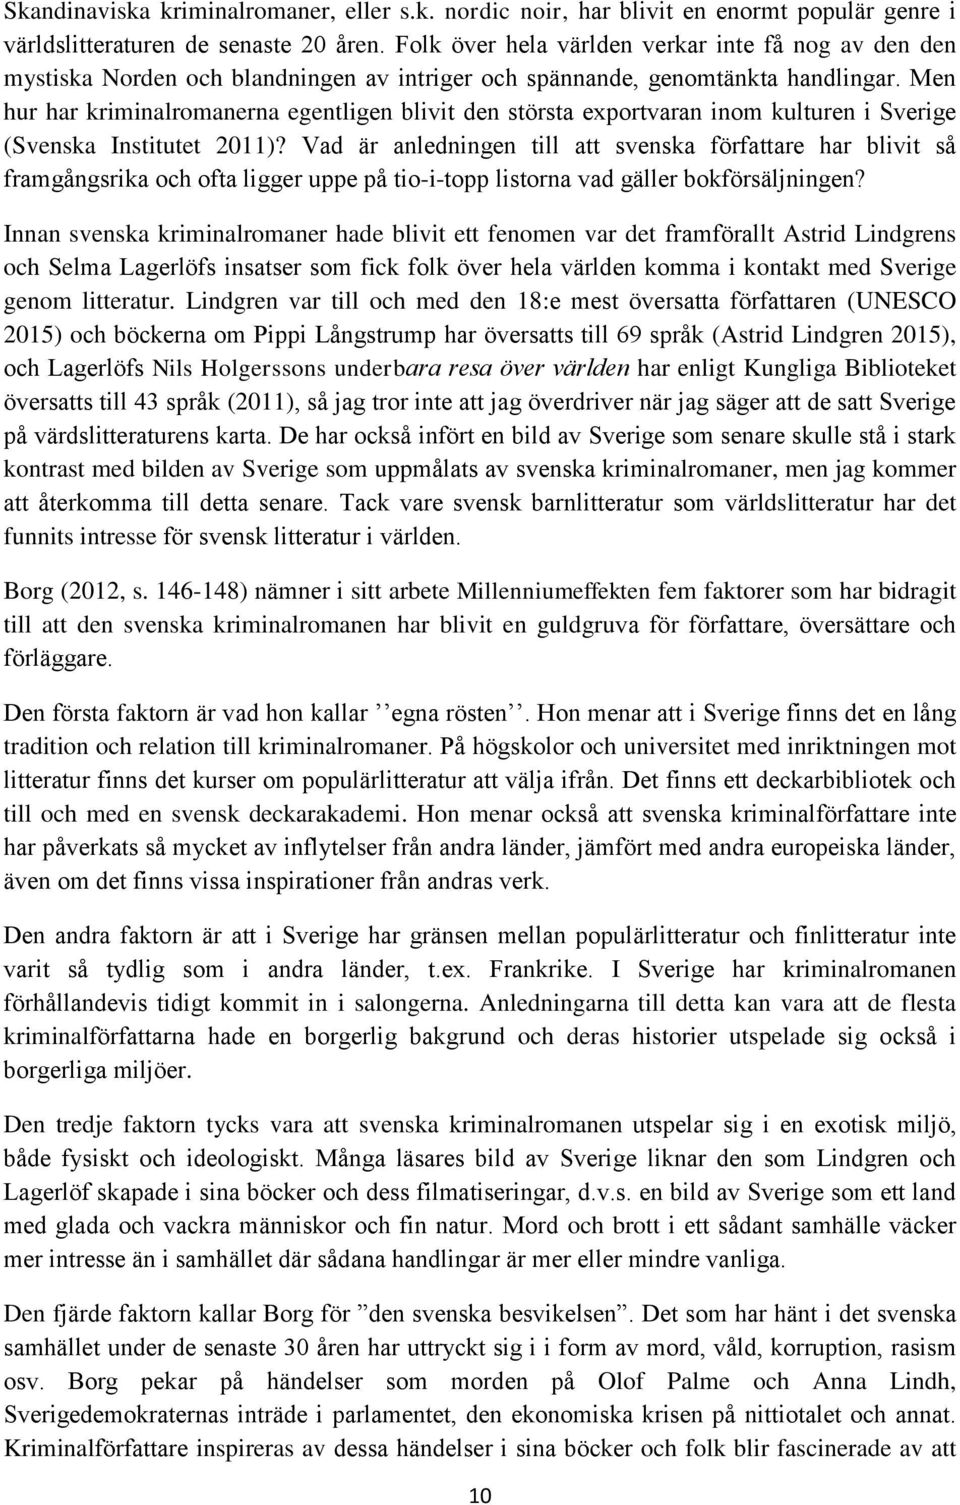 Men hur har kriminalromanerna egentligen blivit den största exportvaran inom kulturen i Sverige (Svenska Institutet 2011)?